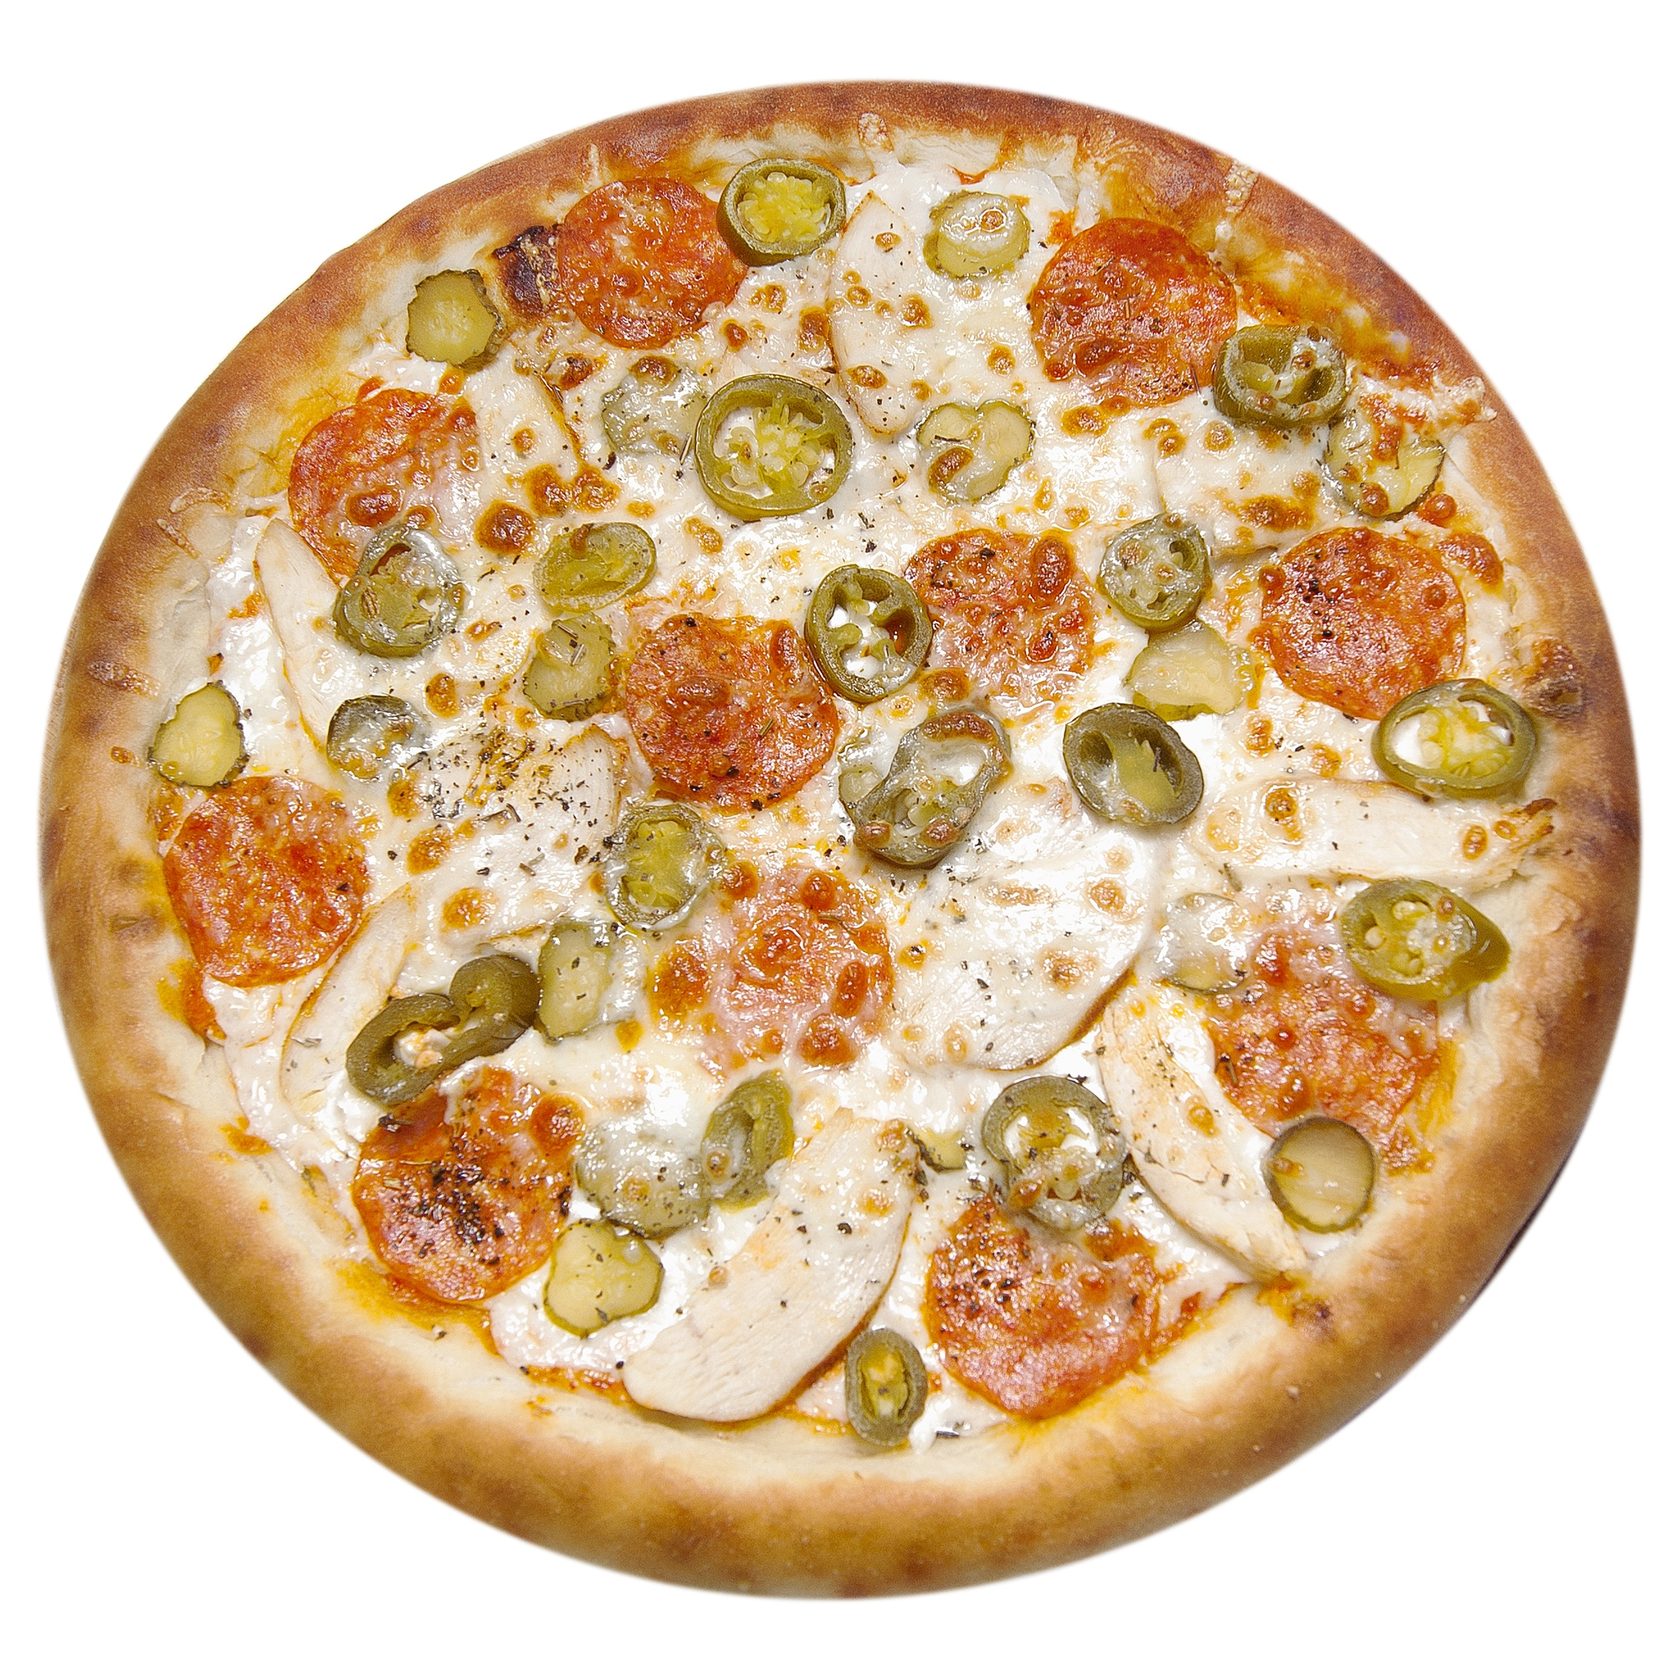 состав начинки пиццы пепперони фото 94